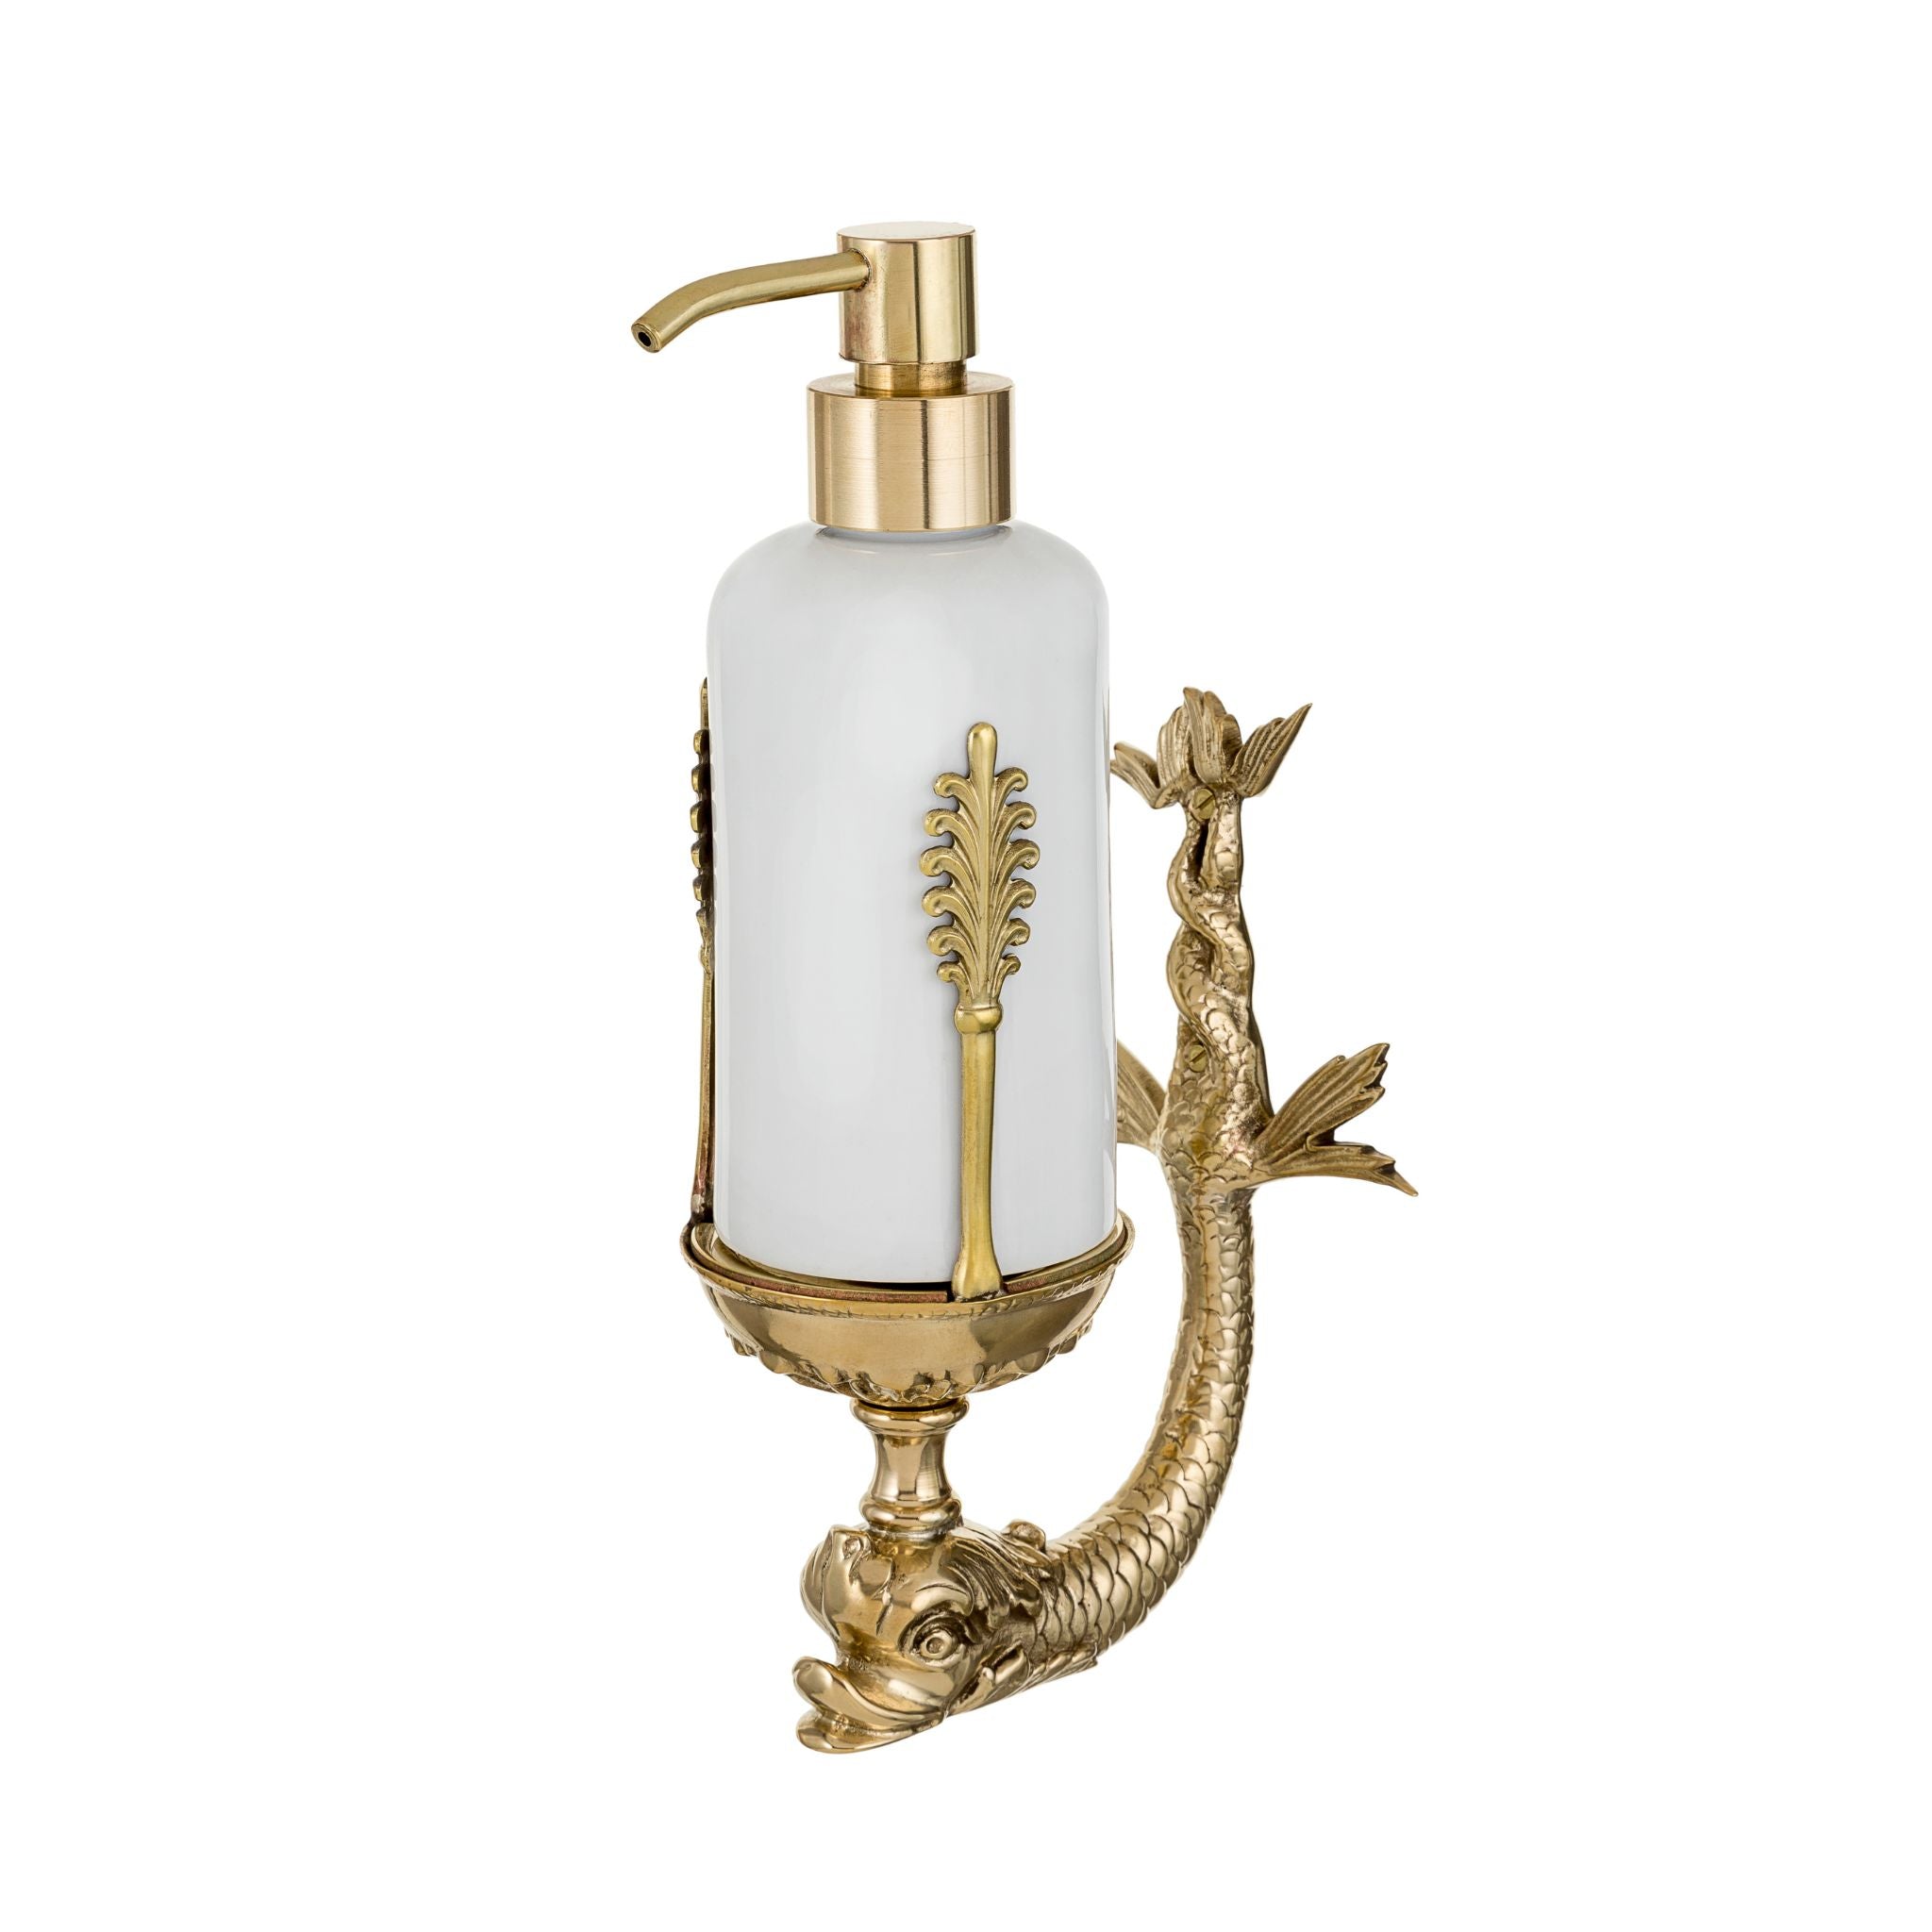 Zante brass and ceramic soap dispenser with dolphin - ilbronzetto